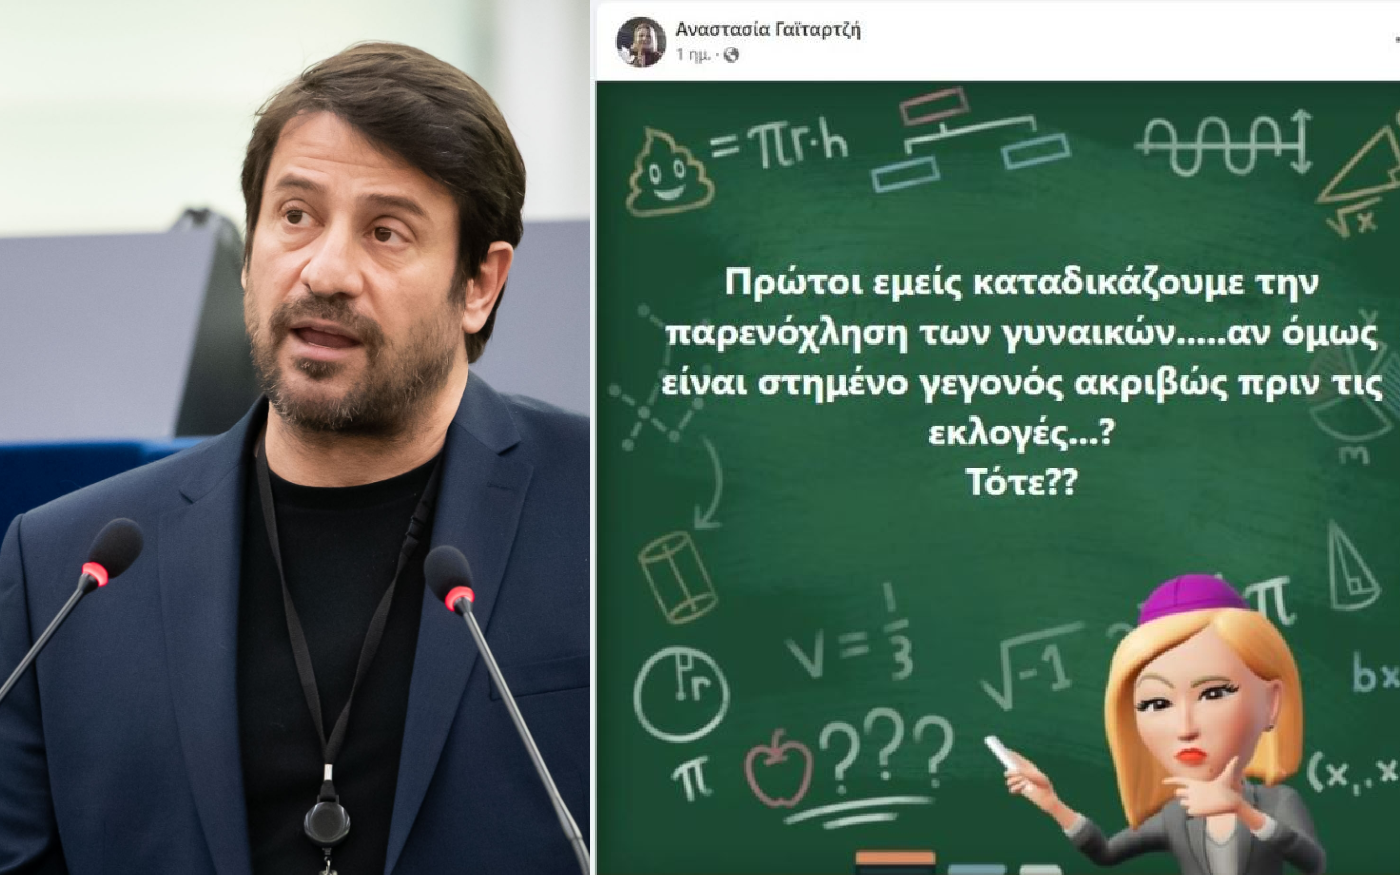 Αλέξης Γεωργούλης: Αντιδράσεις για νέα ανάρτηση από υποψήφια του ΣΥΡΙΖΑ – «Καταδικάζουμε αλλά αν είναι στημένο;»